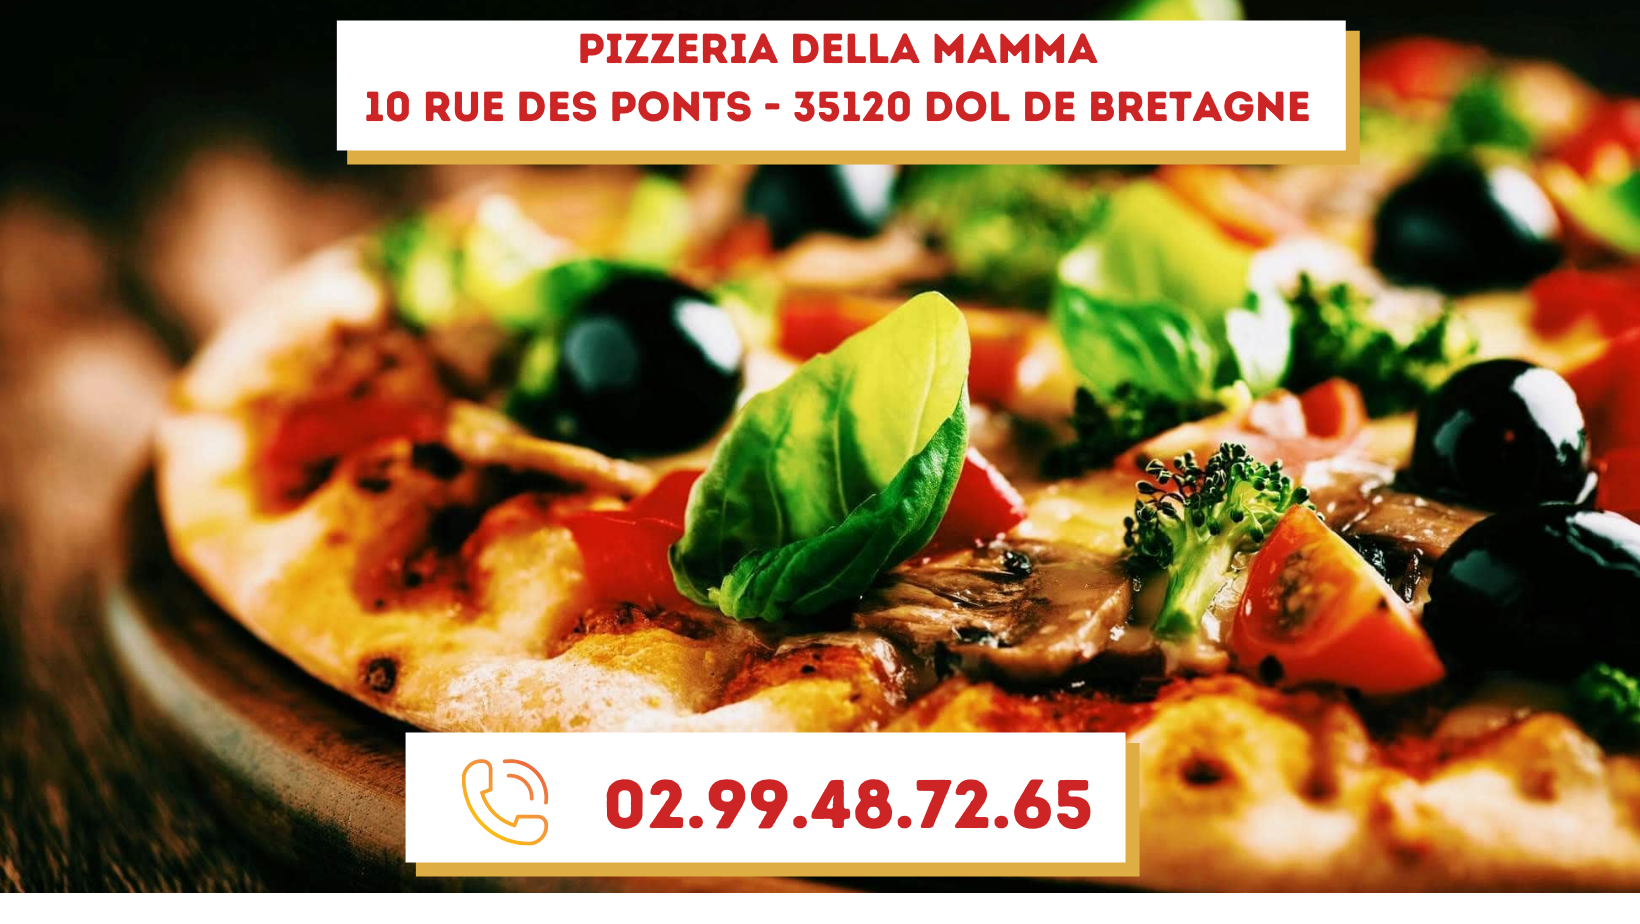 Pizzeria della mamma 10 rue des ponts 35120 dol de bretagne